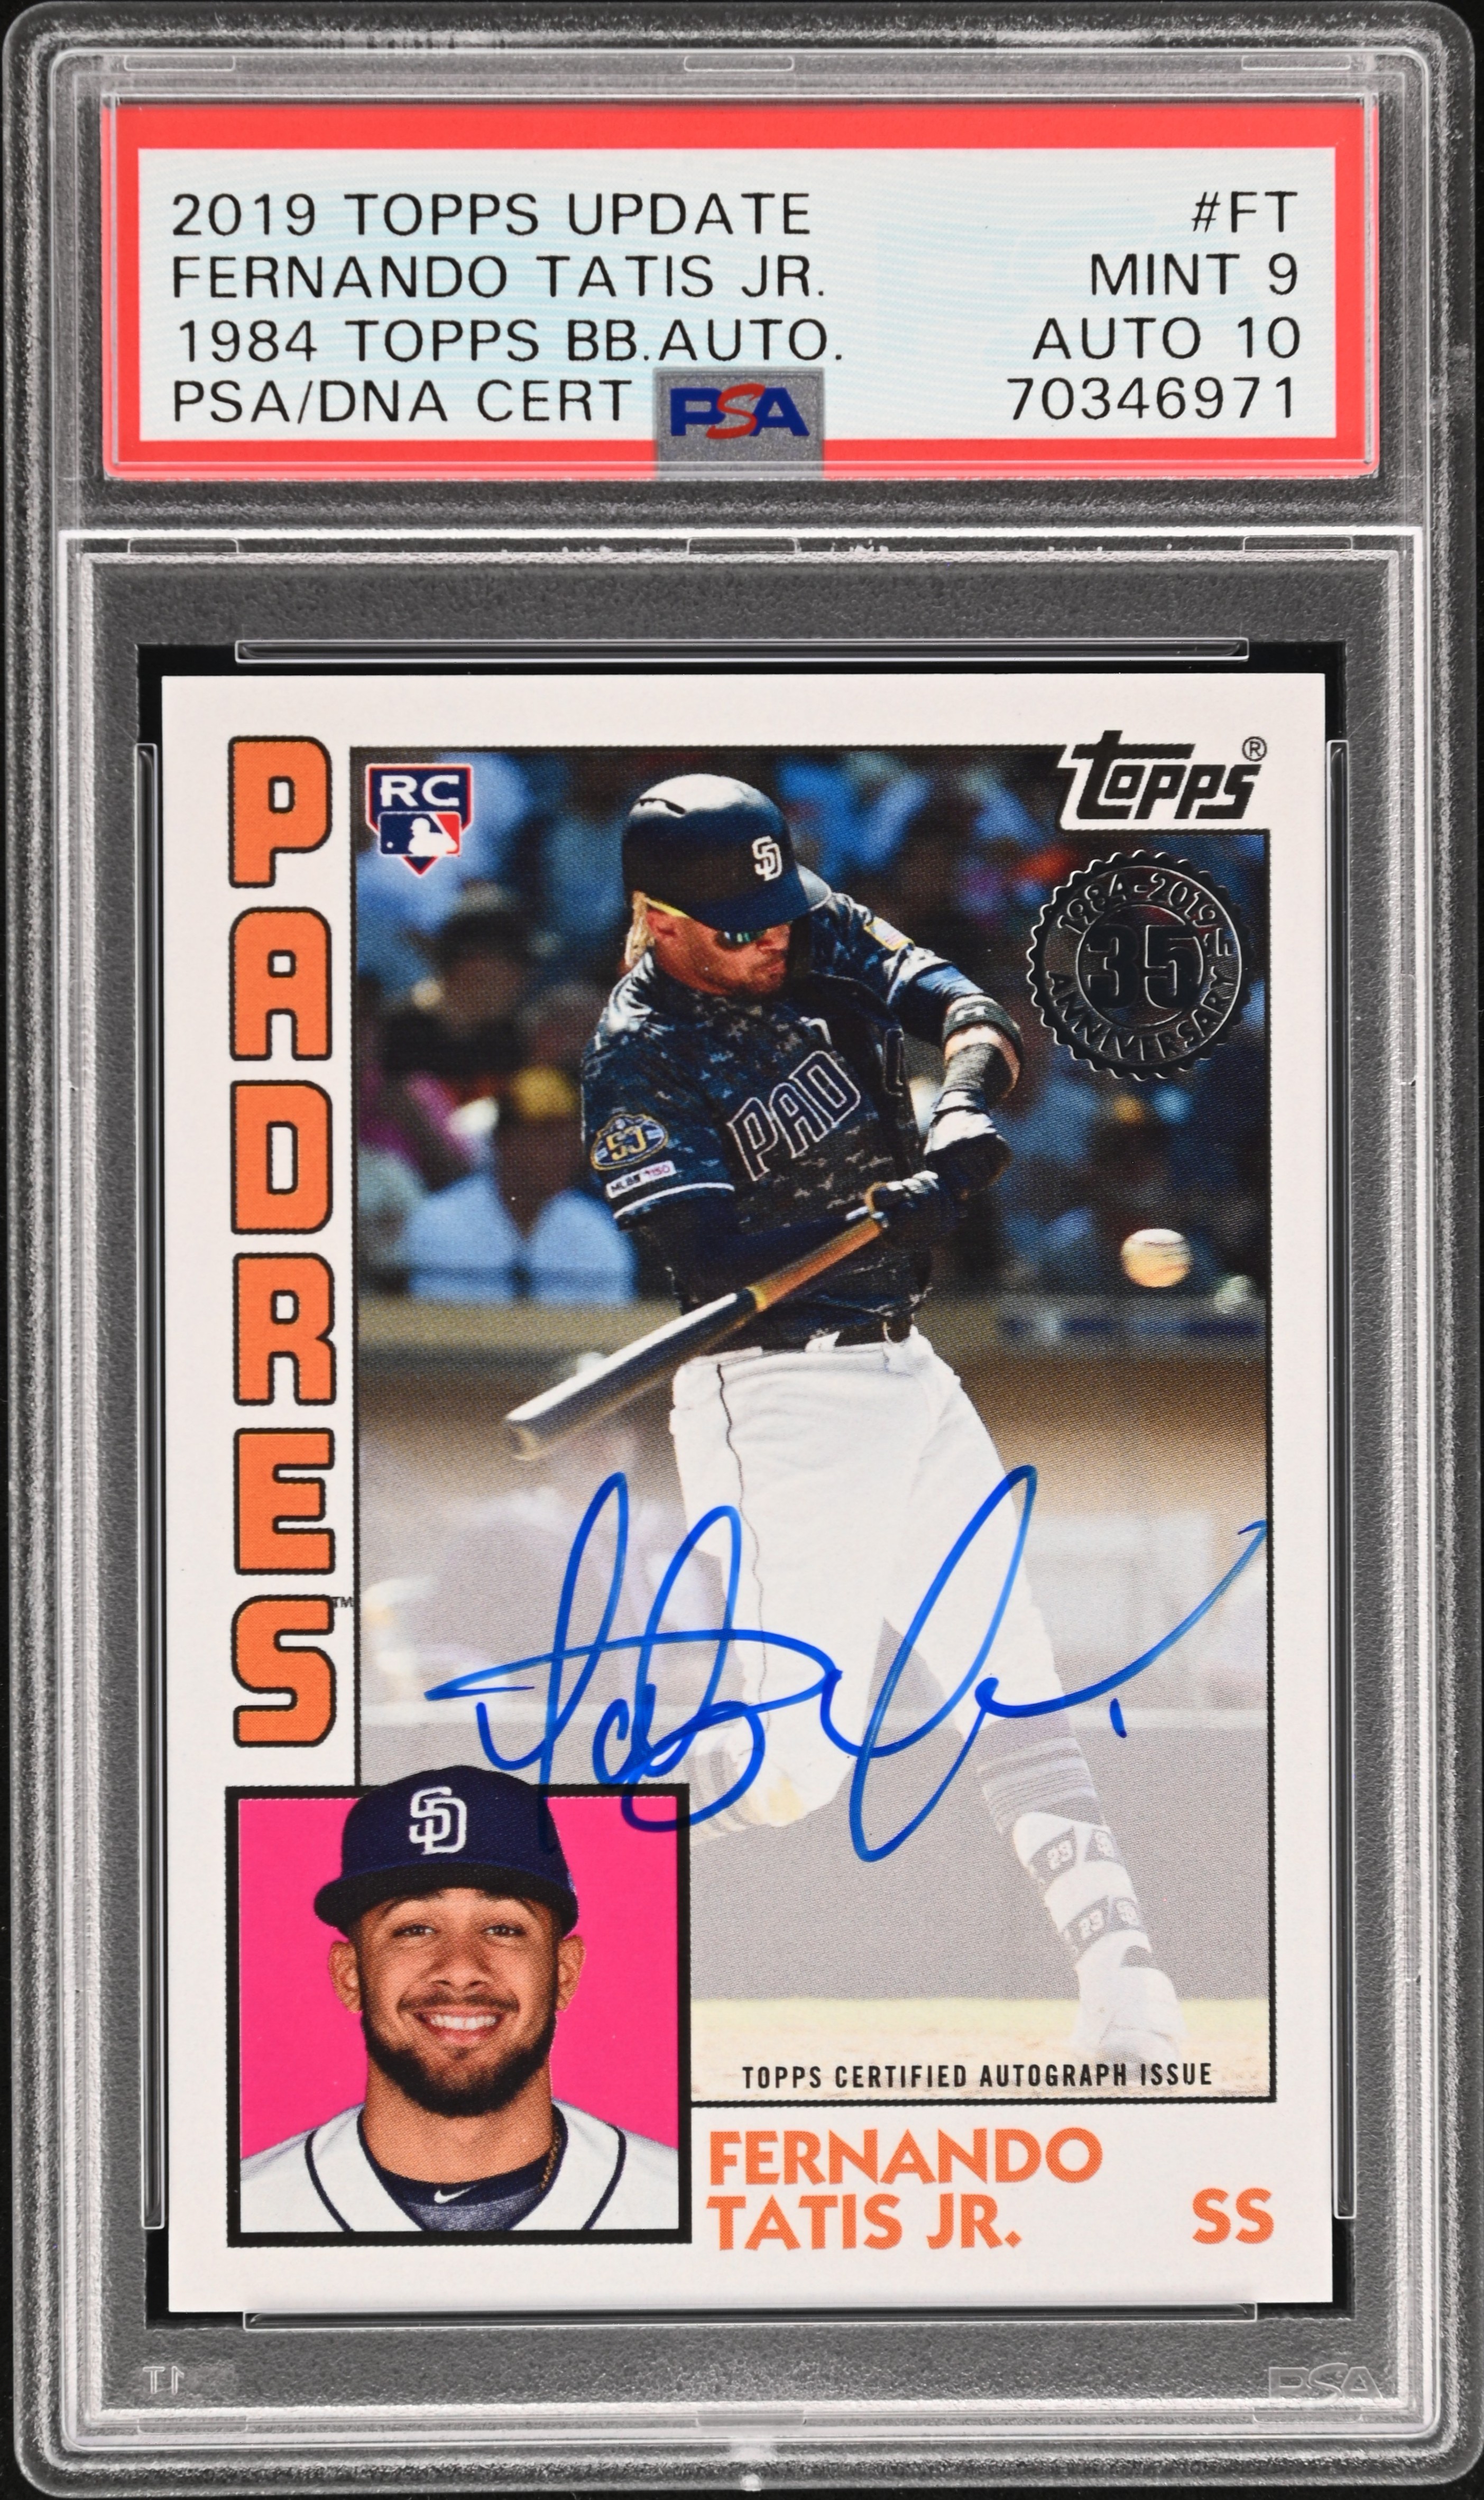 2019 Topps Update 1984 Topps Baseball Autographs #FT Fernando Tatis Jr. Signed Rookie Card – PSA MINT 9, PSA/DNA GEM MT 10